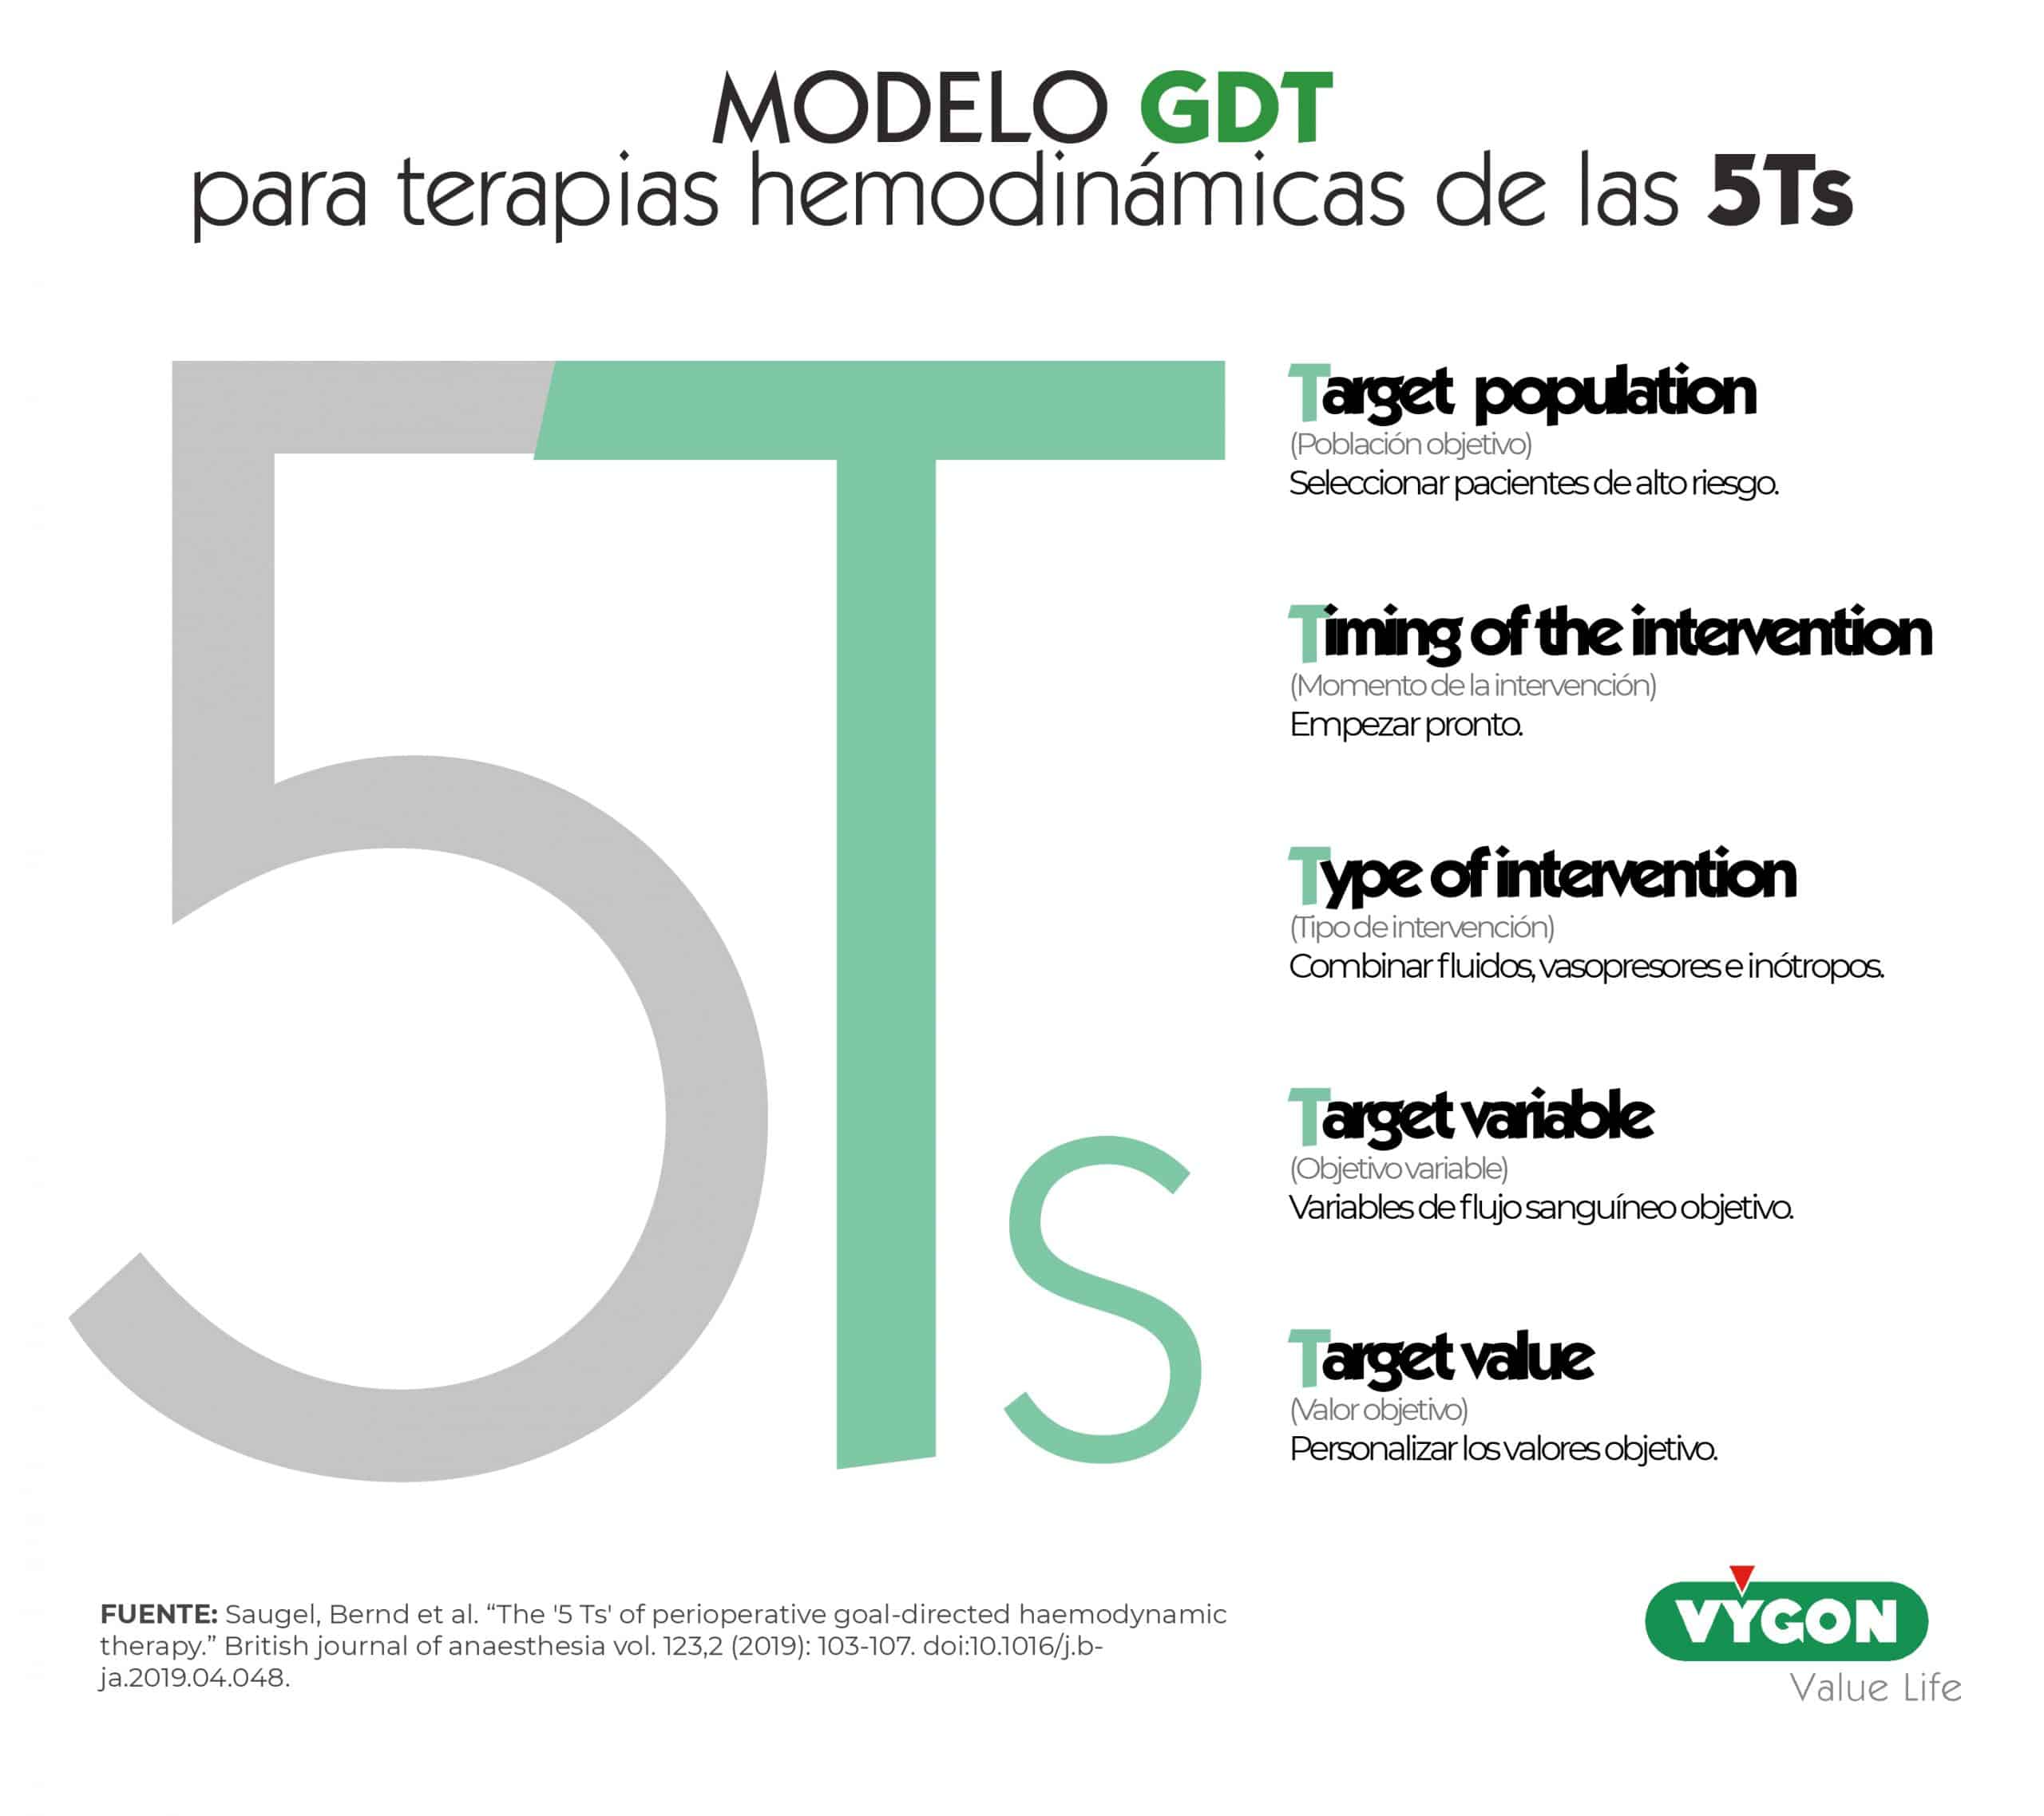 Figura 7: Modelo GDT para terapias hemodinámicas de las 5Ts.